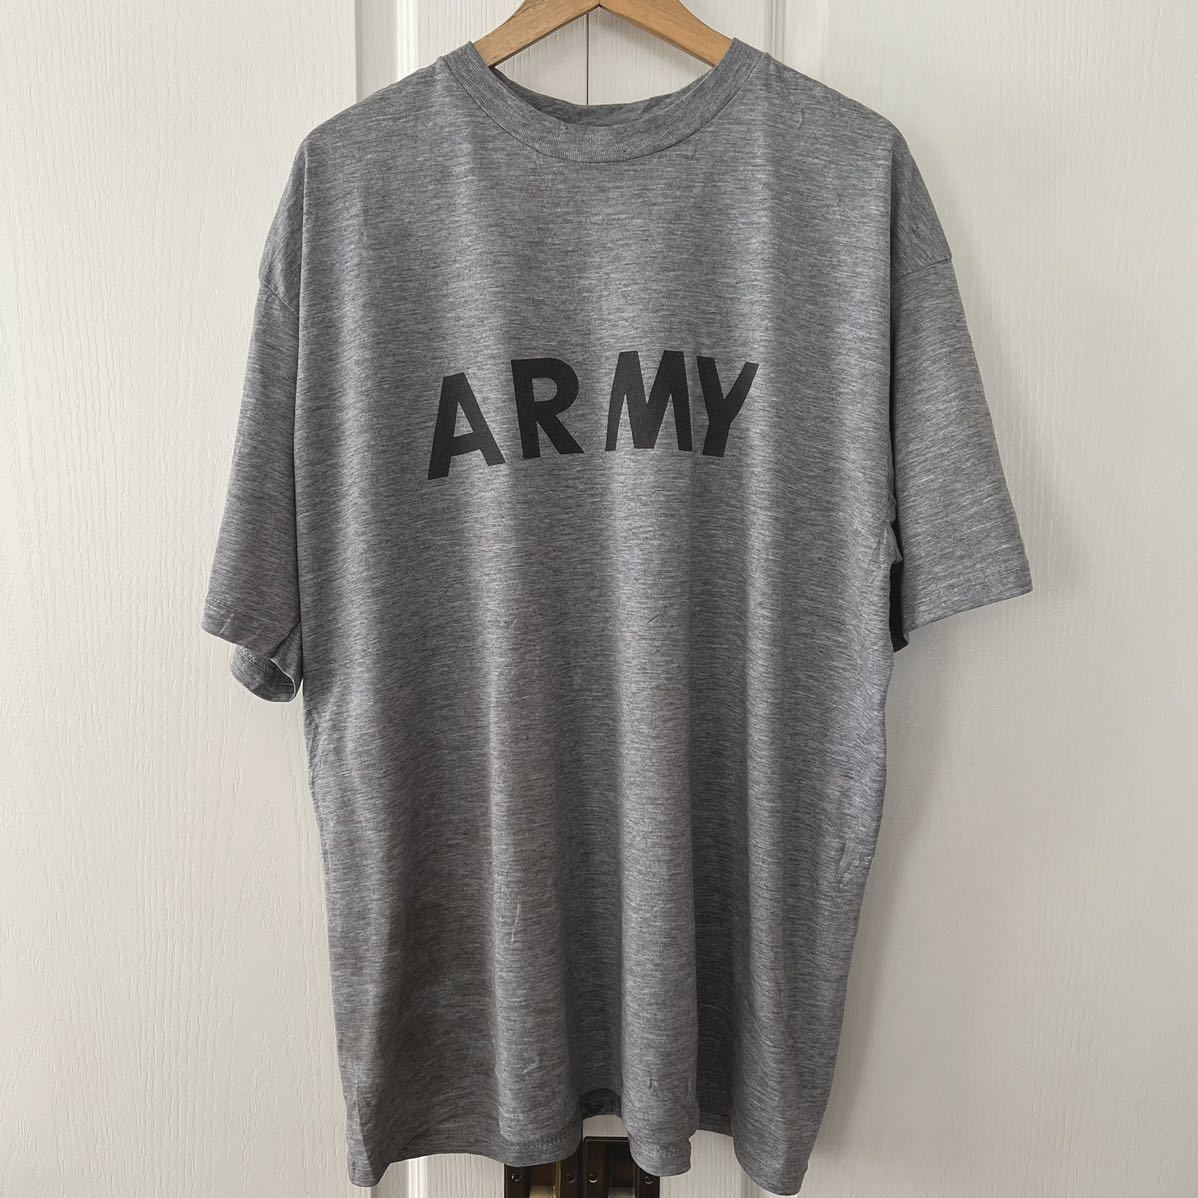 U.S ARMY 米軍 フィジカル 半袖 Tシャツ アーミー プリントTシャツ XL 杢グレー 実物 us army アメリカ軍 バックプリント ビッグシルエット